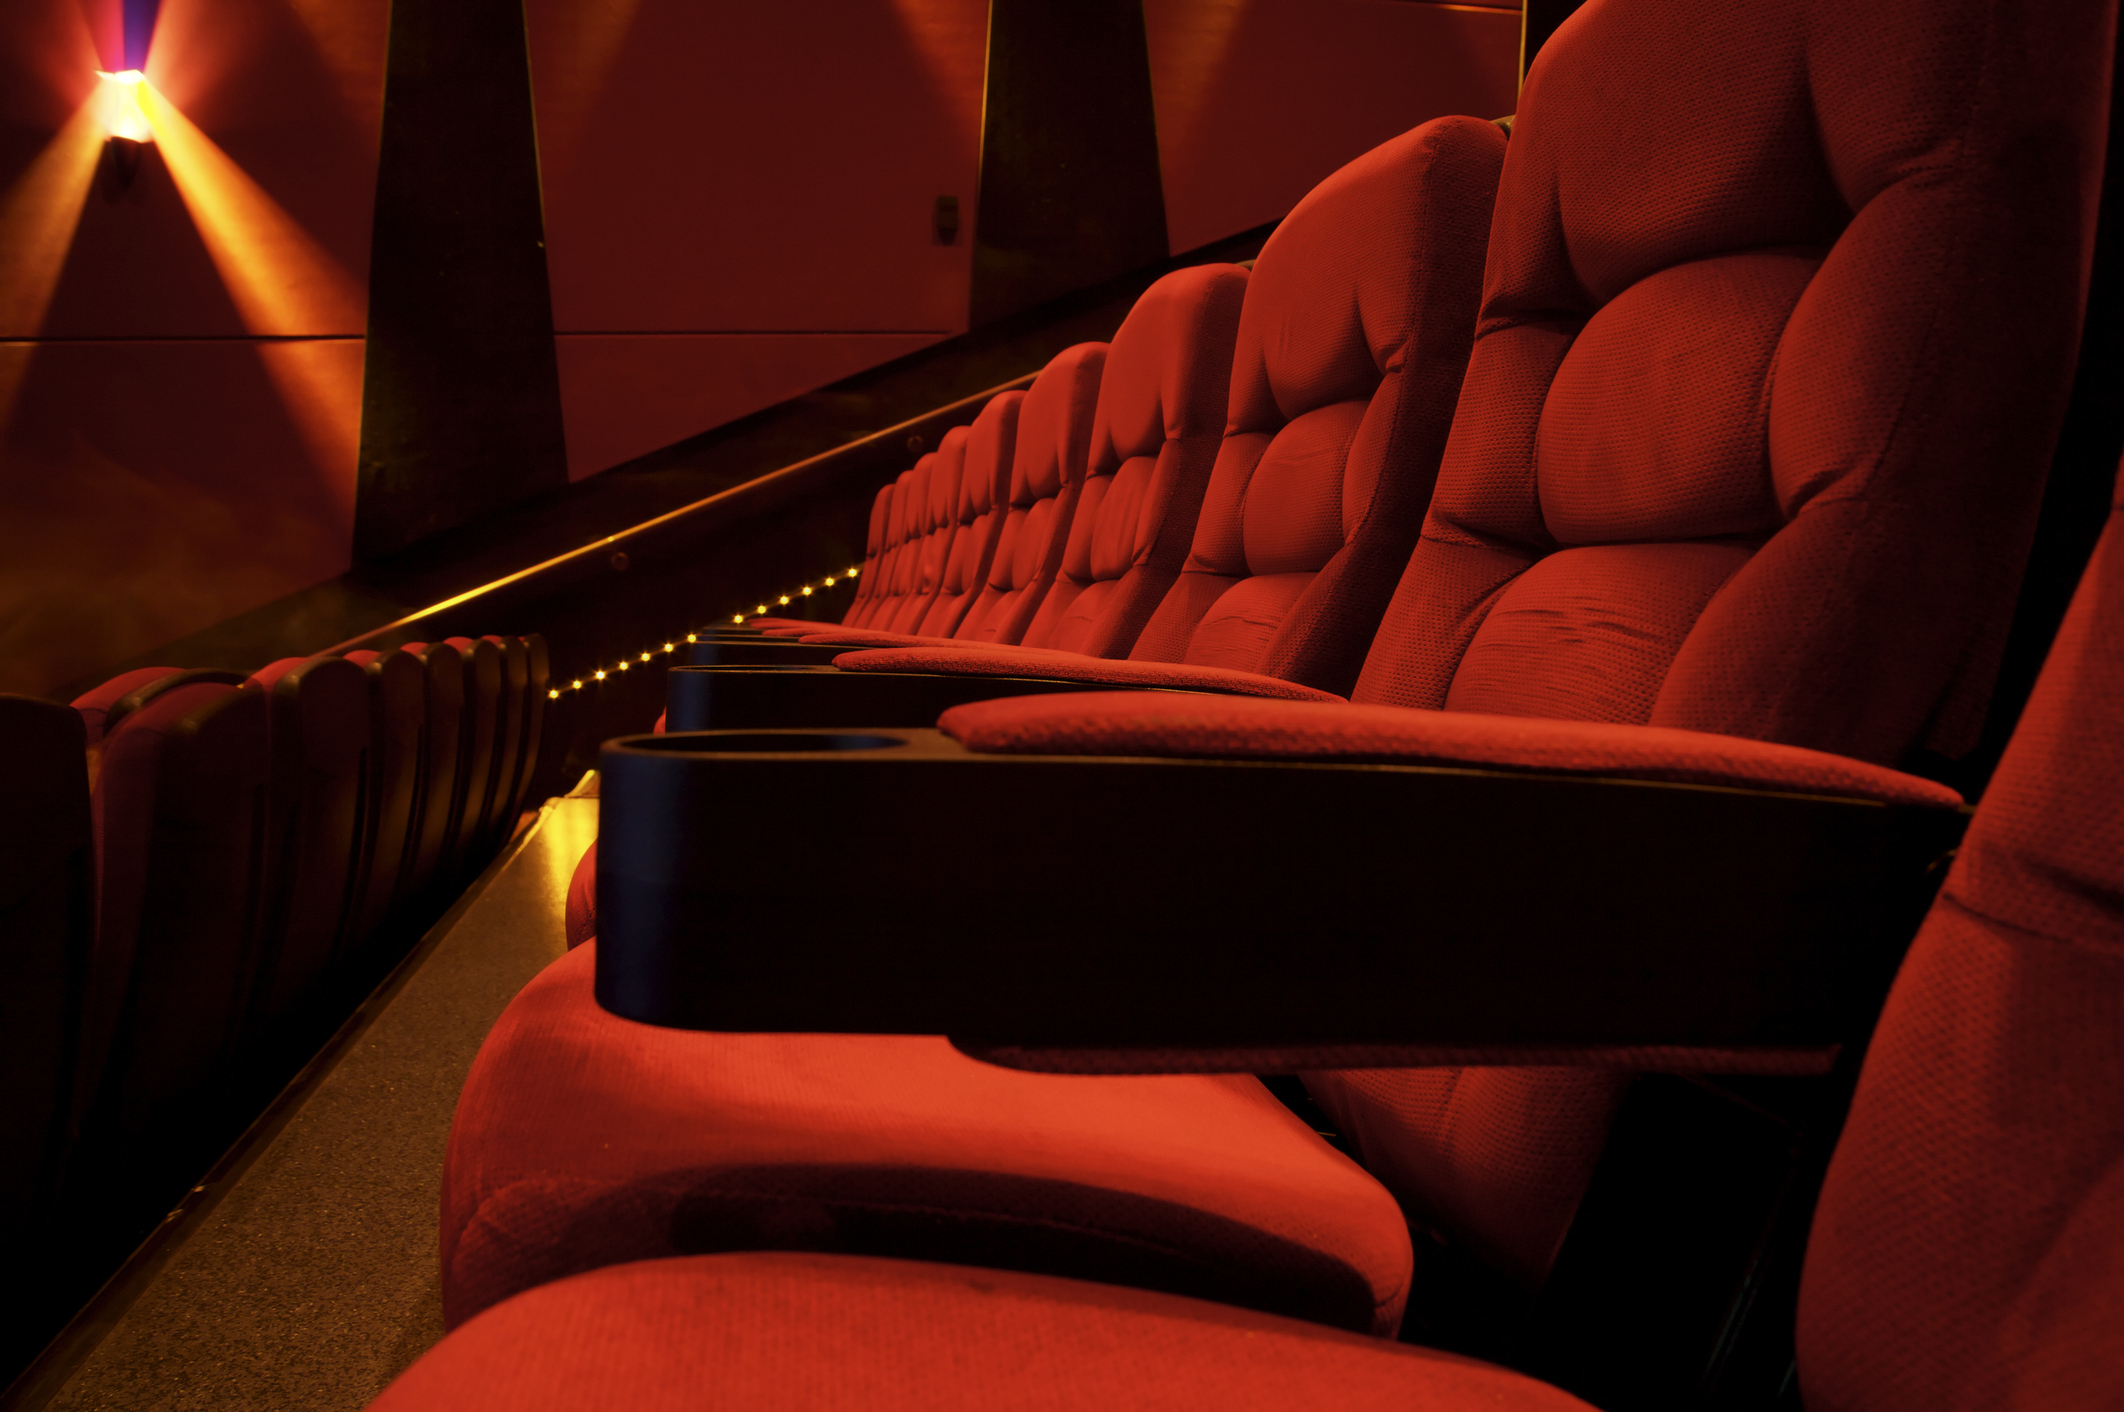 Movie theater seats. 